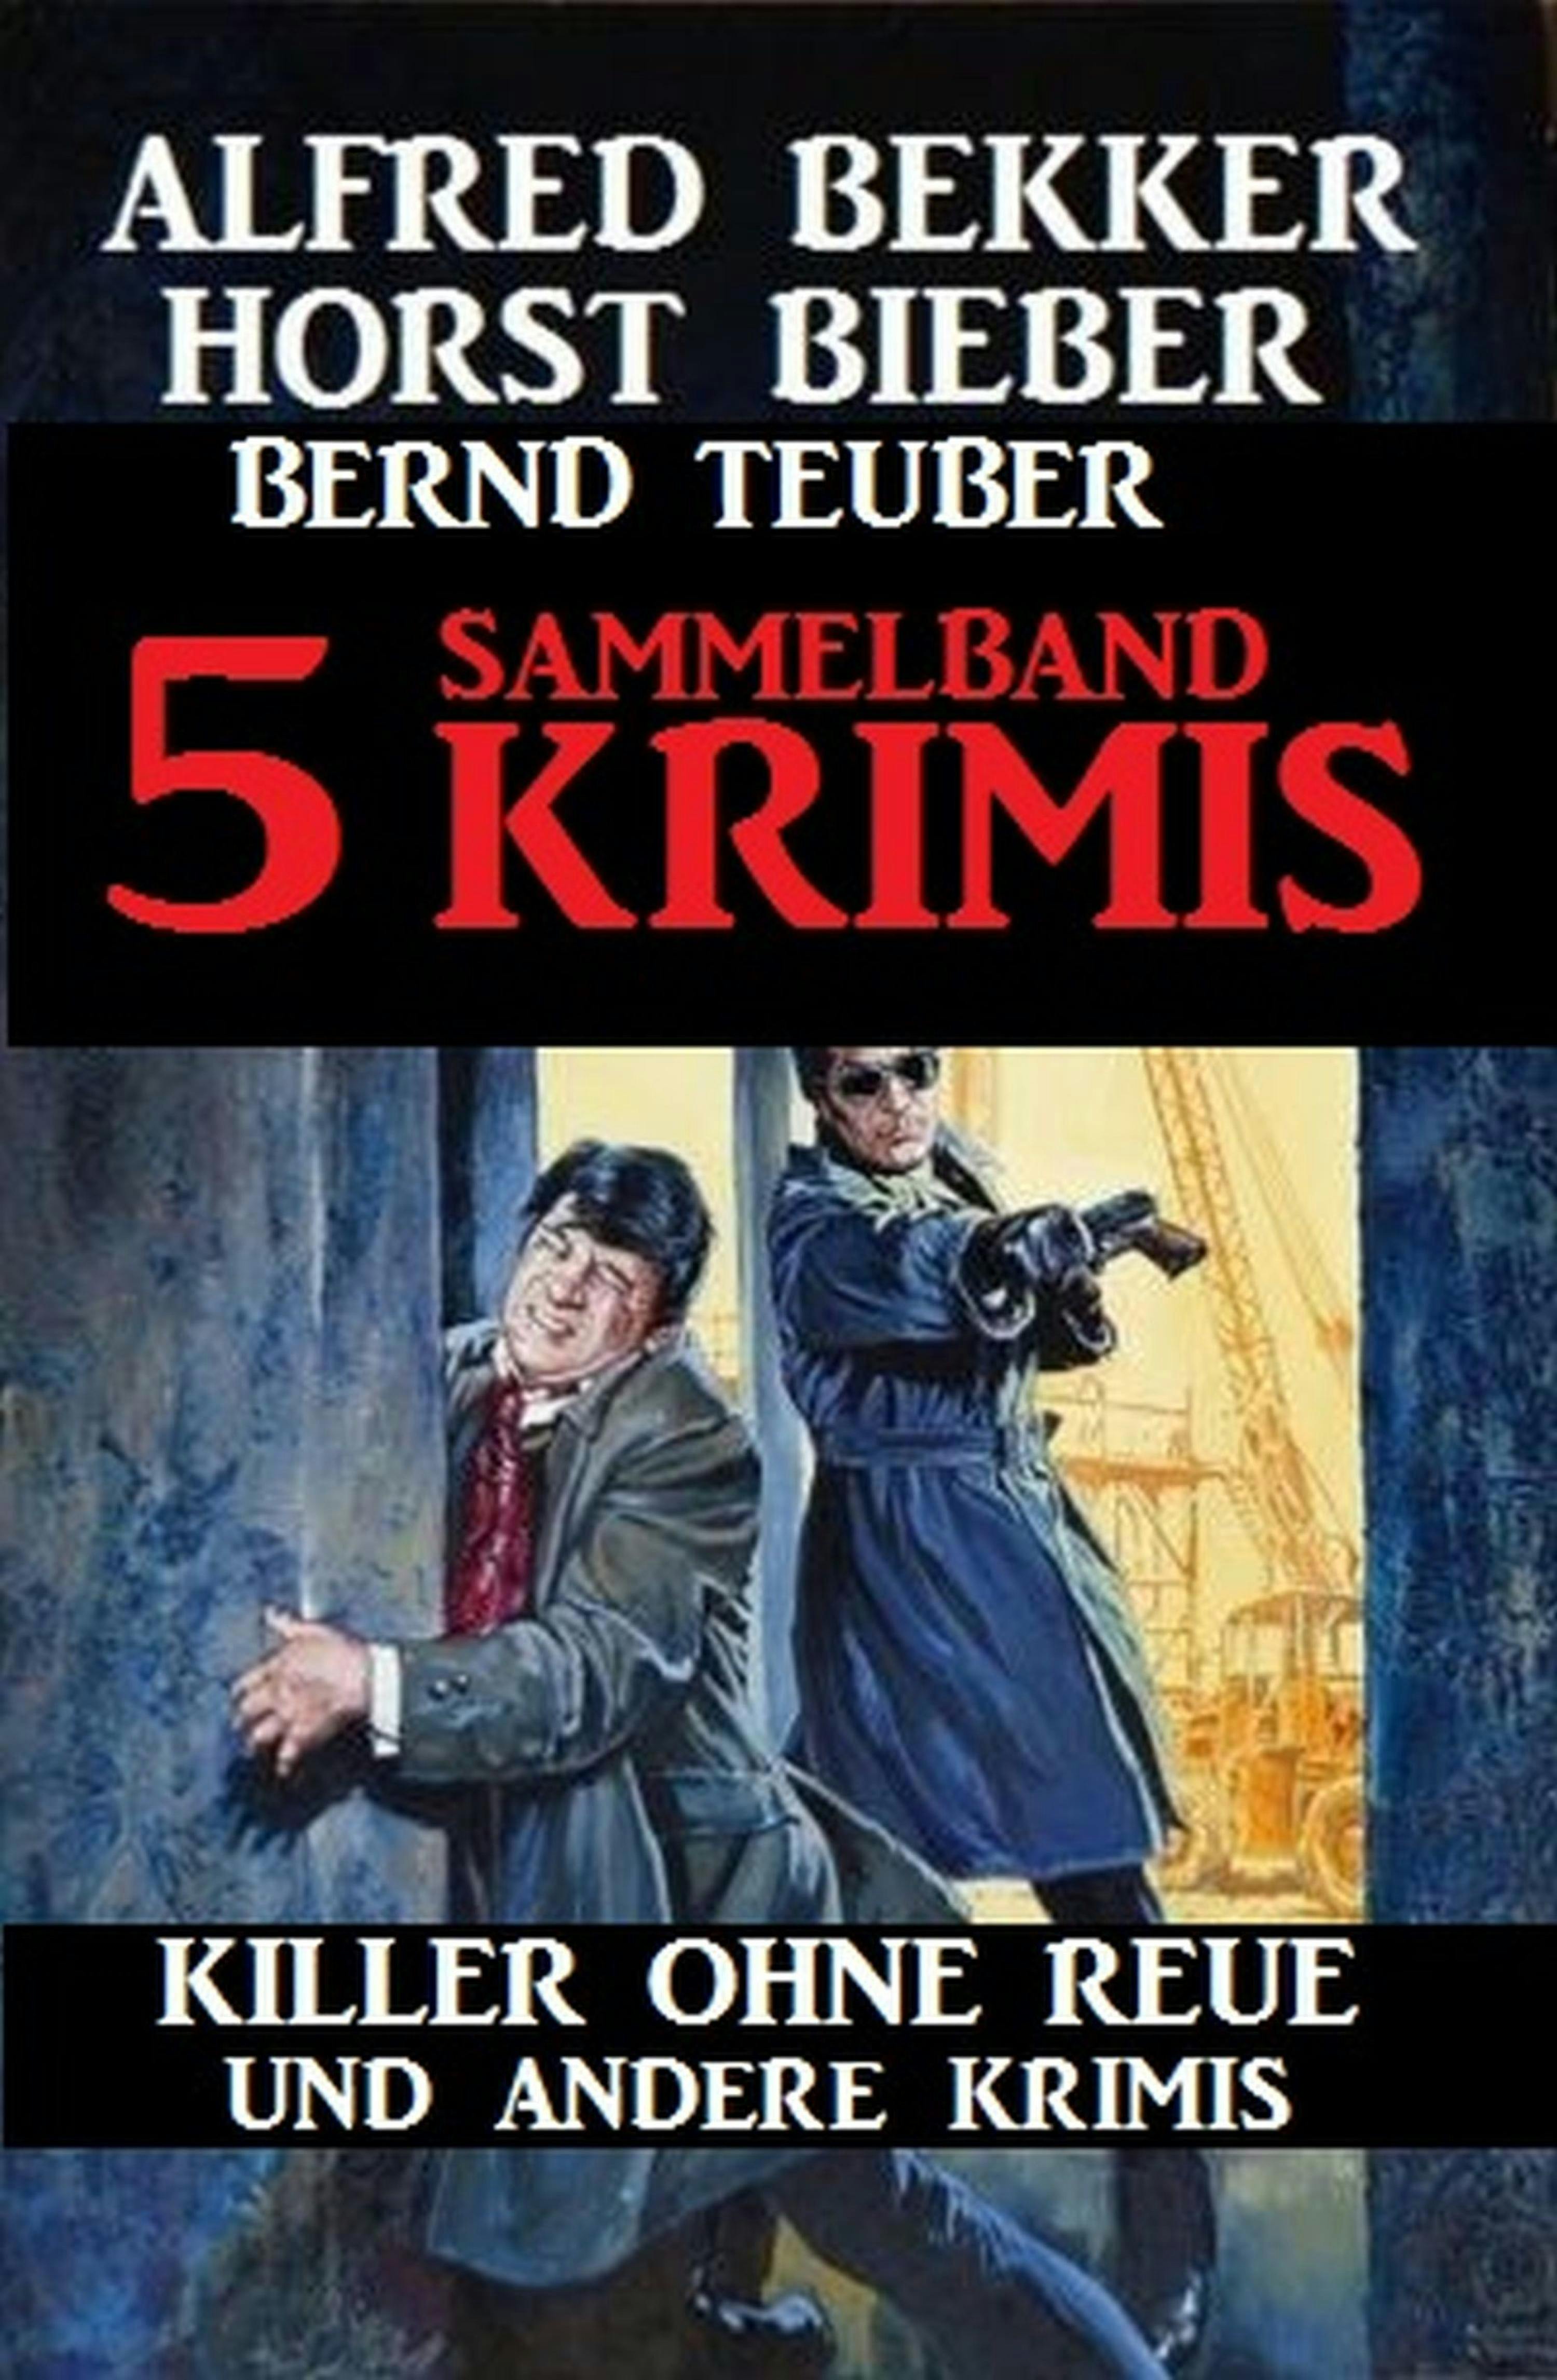 Sammelband 5 Krimis - Killer ohne Reue und andere Krimis - Alfred Bekker, Bernd Teuber, Horst Bieber